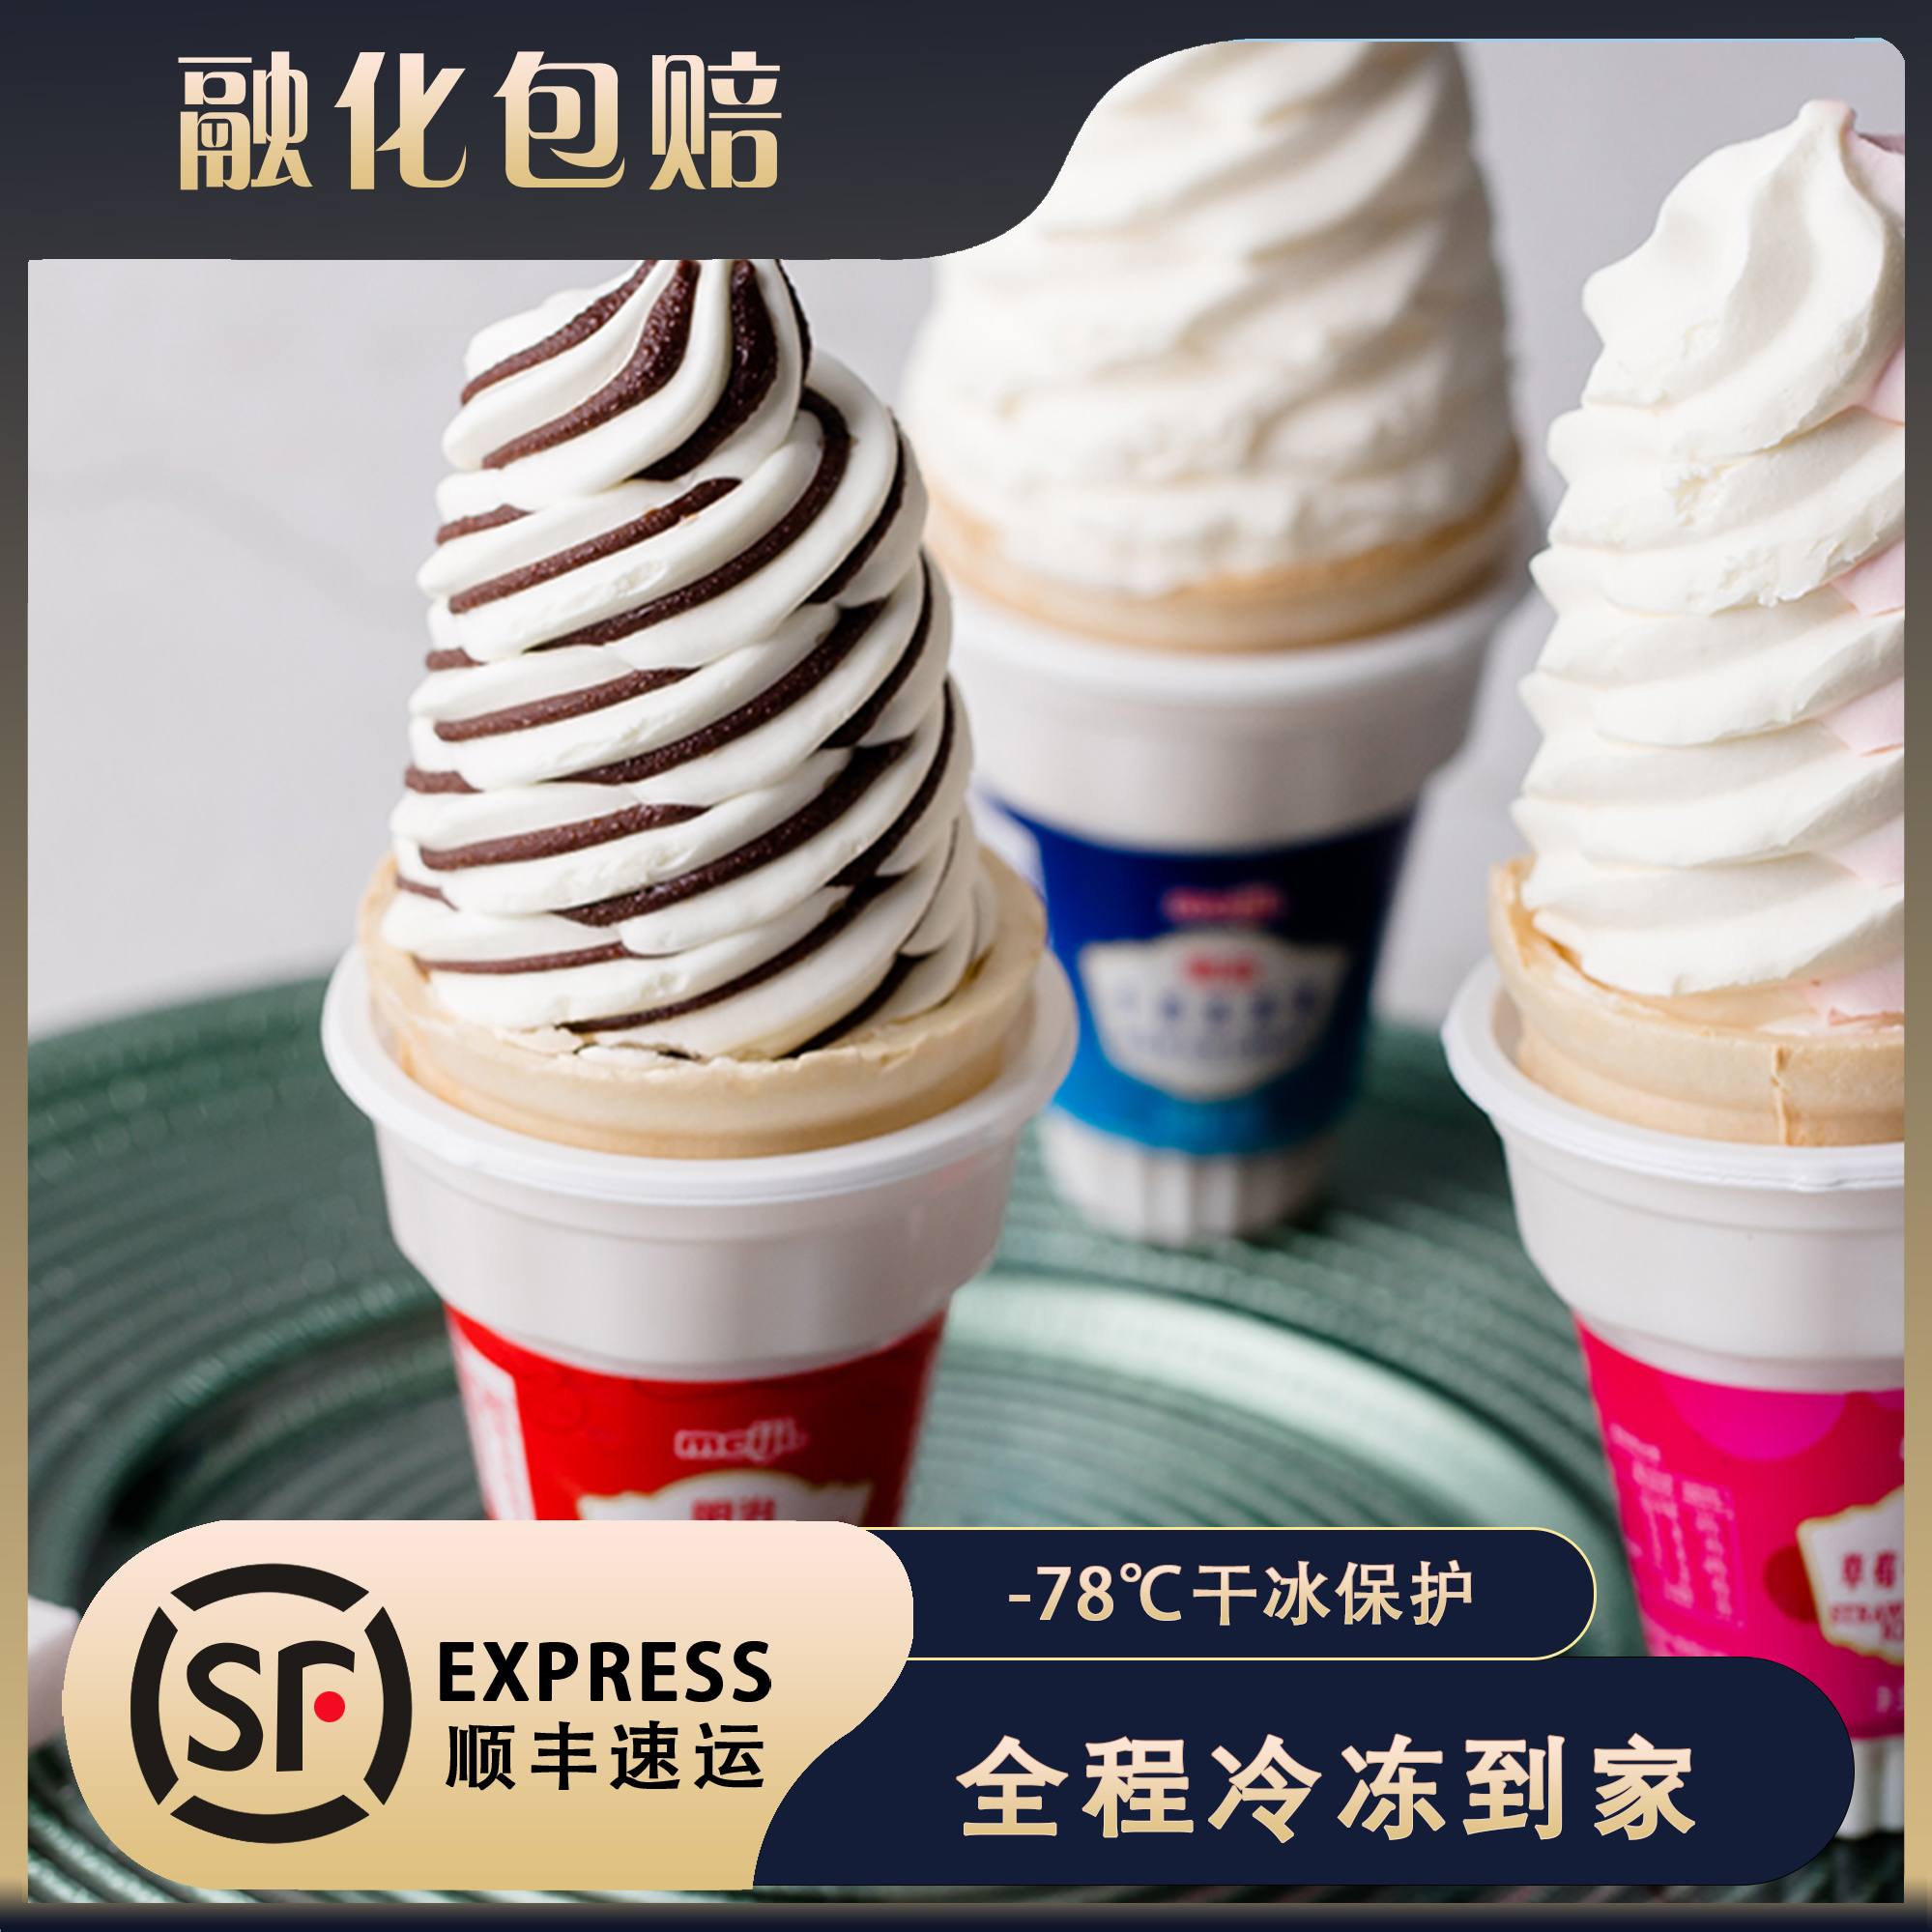 日本明治火炬筒冰淇淋网红甜筒雪糕草莓味松脆牛奶巧克力冰激凌